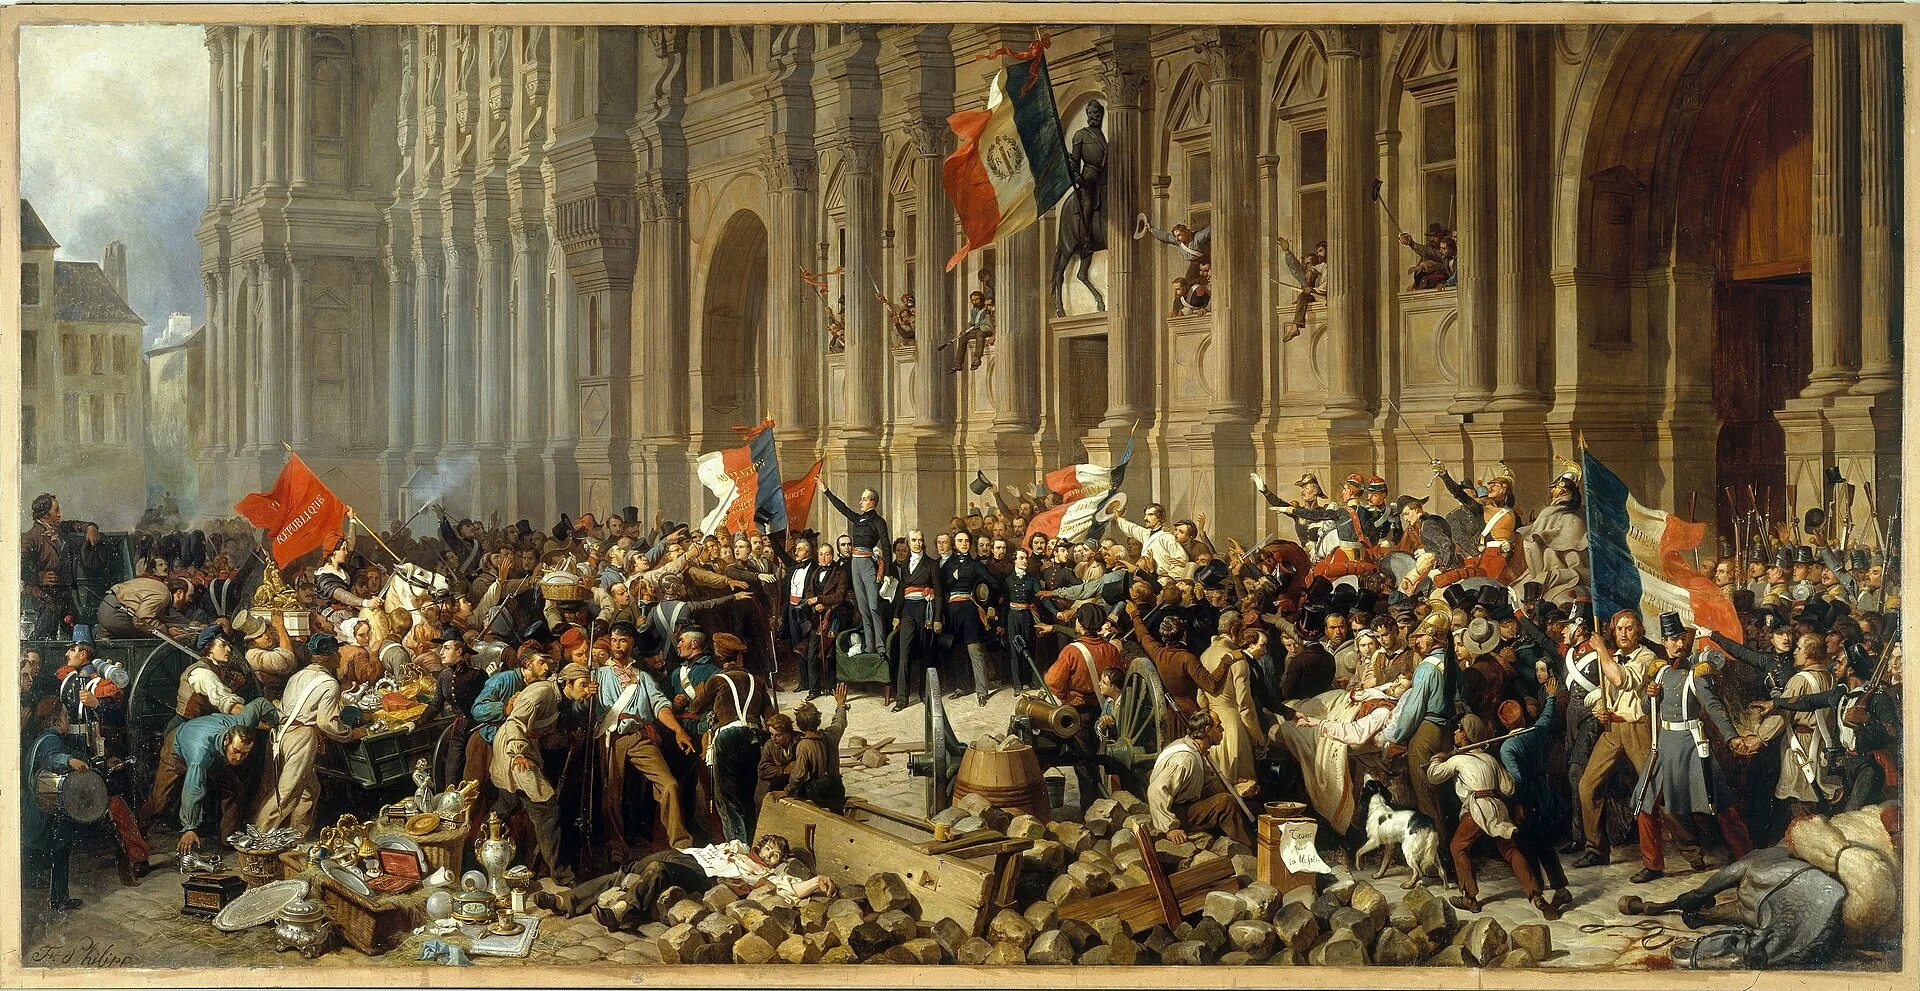 Исторический именно. Революция 1848 года во Франции. Французская революция 1789 Наполеон. Революция во Франции 1830. Февральская революция во Франции 1848.